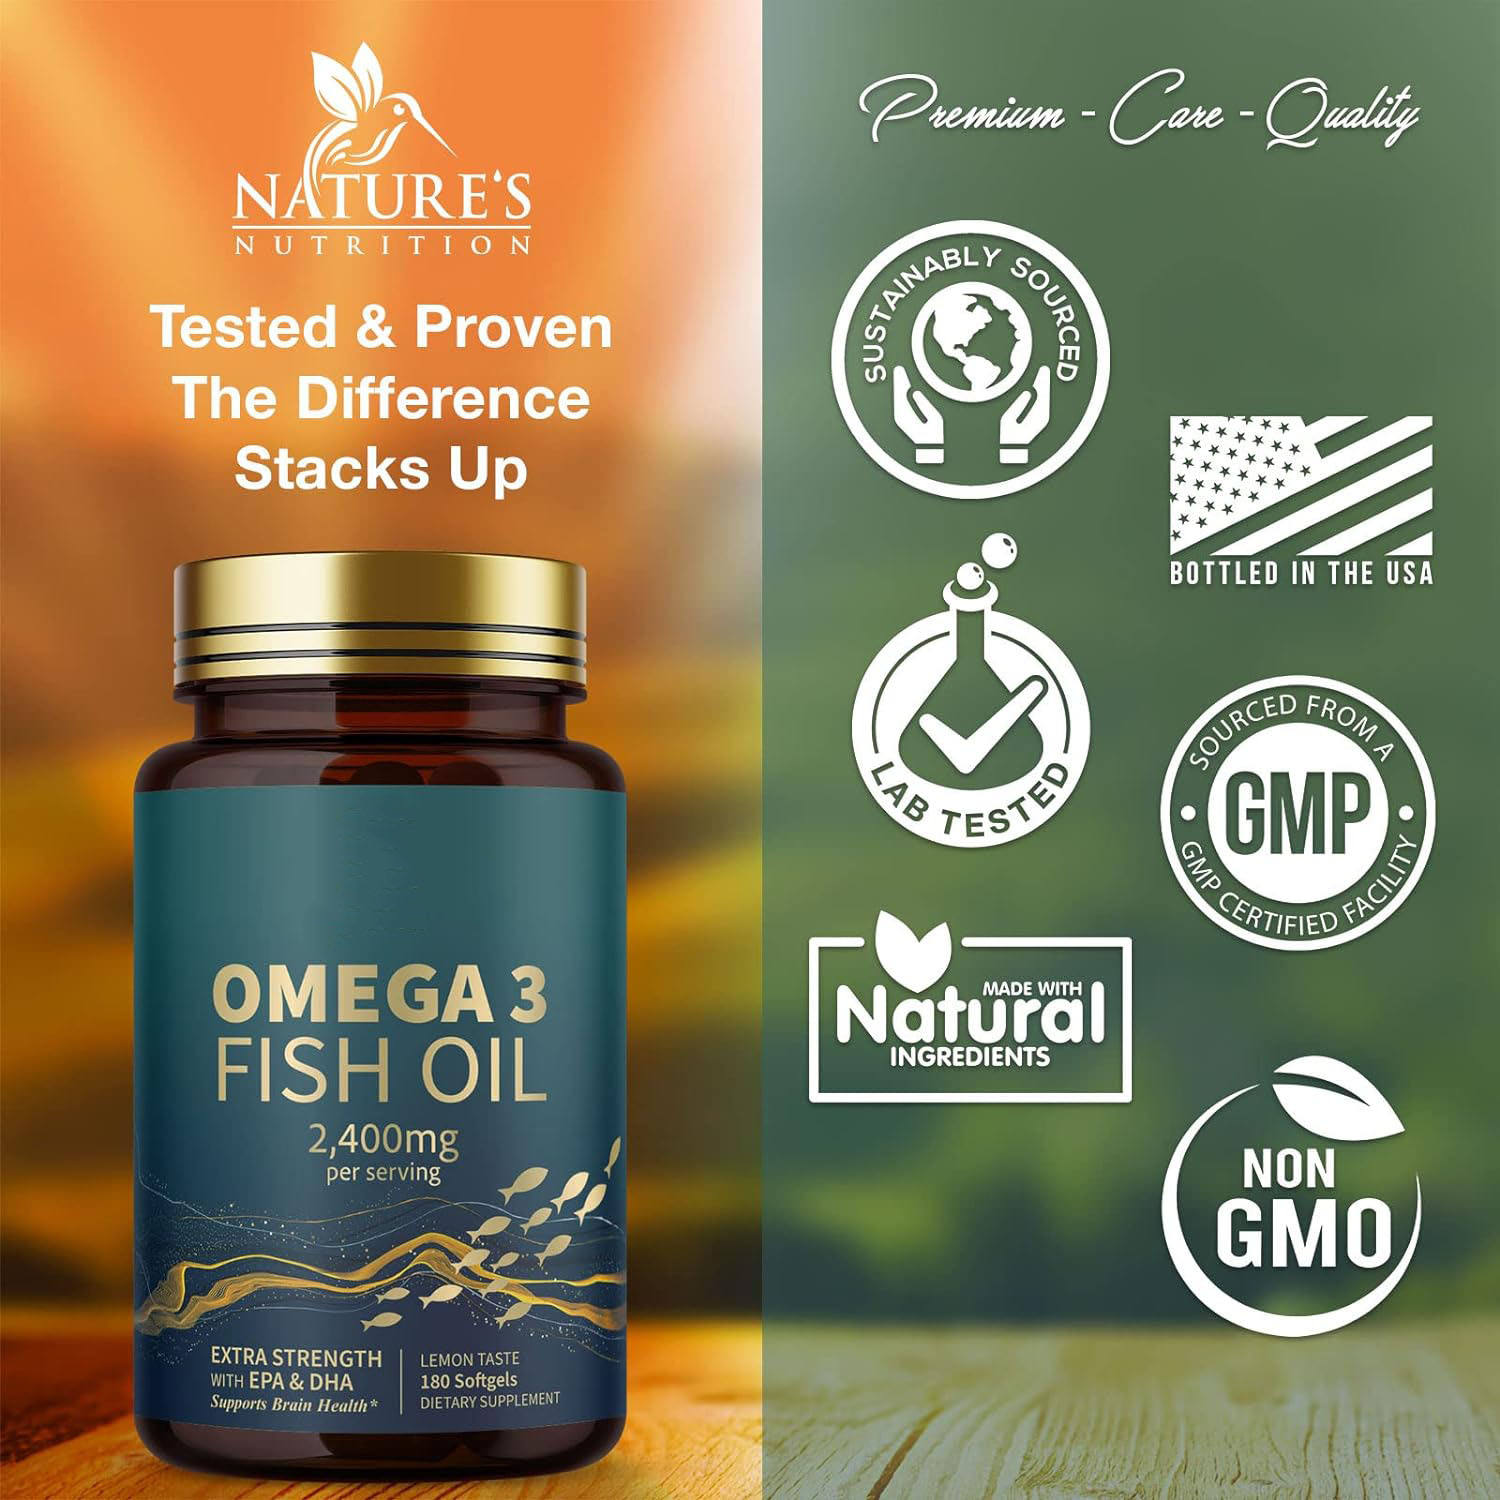 Suplemento de cápsulas blandas de aceite de pescado omega-3 de triple potencia que apoya la salud del cerebro y el corazón